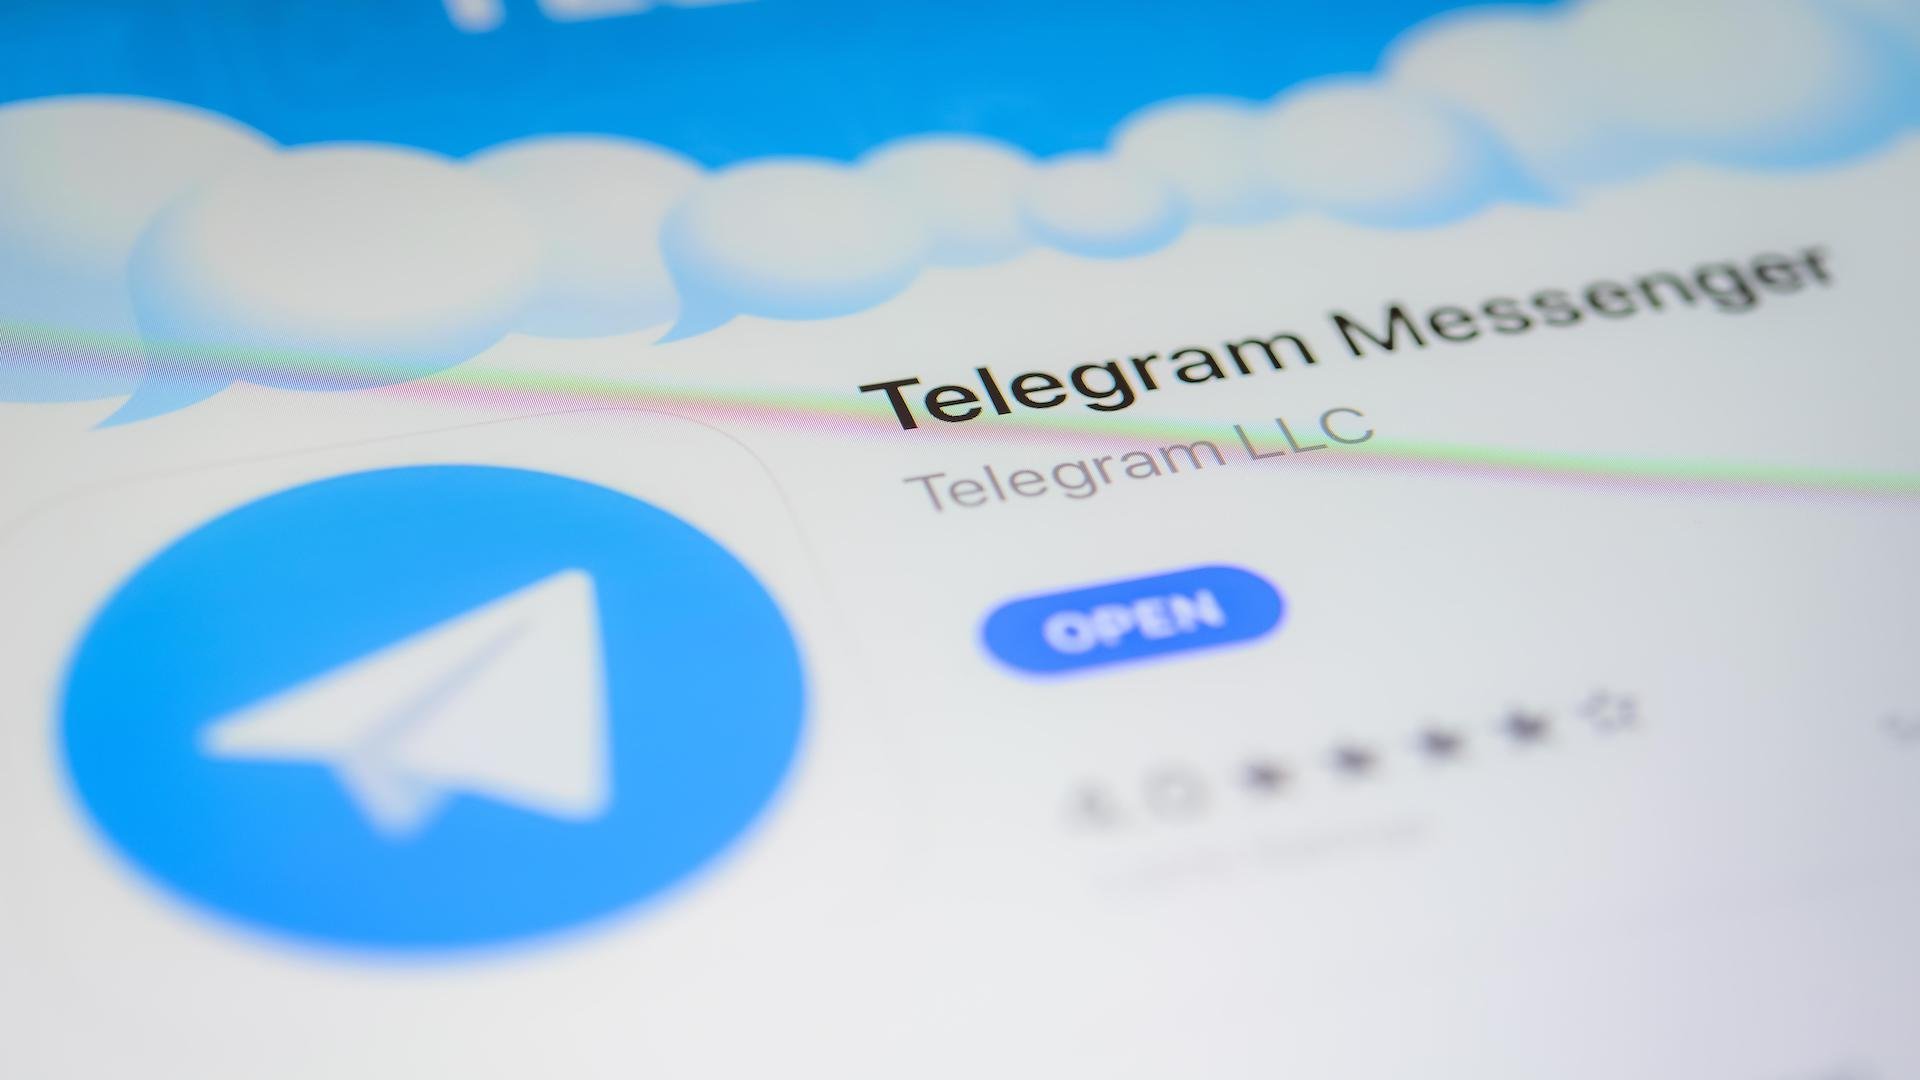 Обновить телеграмм до последней версии бесплатно на русском языке как андроид фото 76